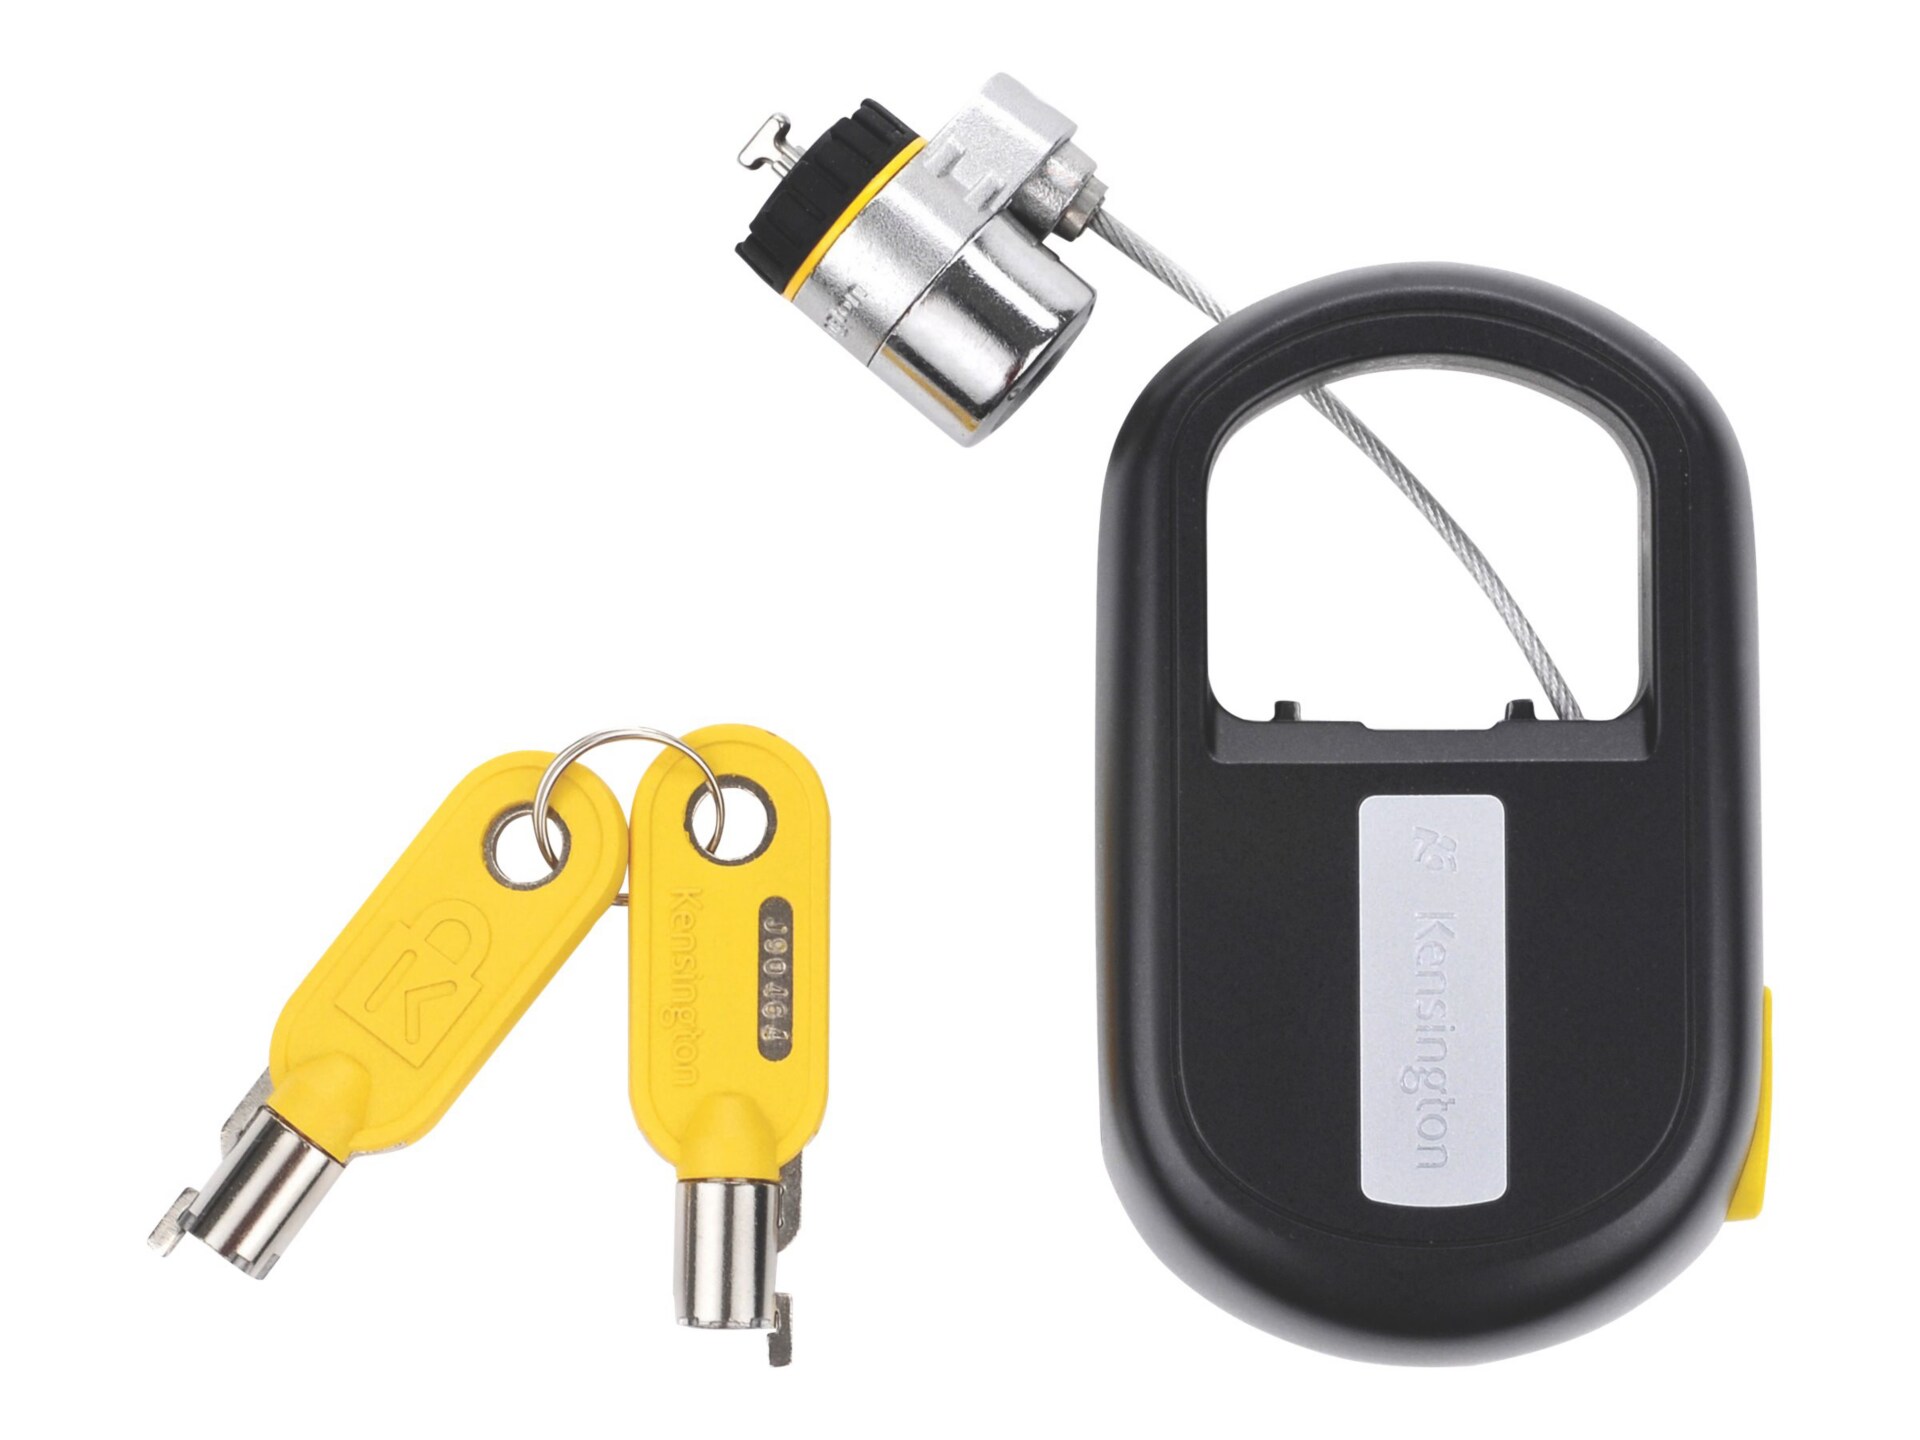 Kensington MicroSaver Retractable - security cable lock